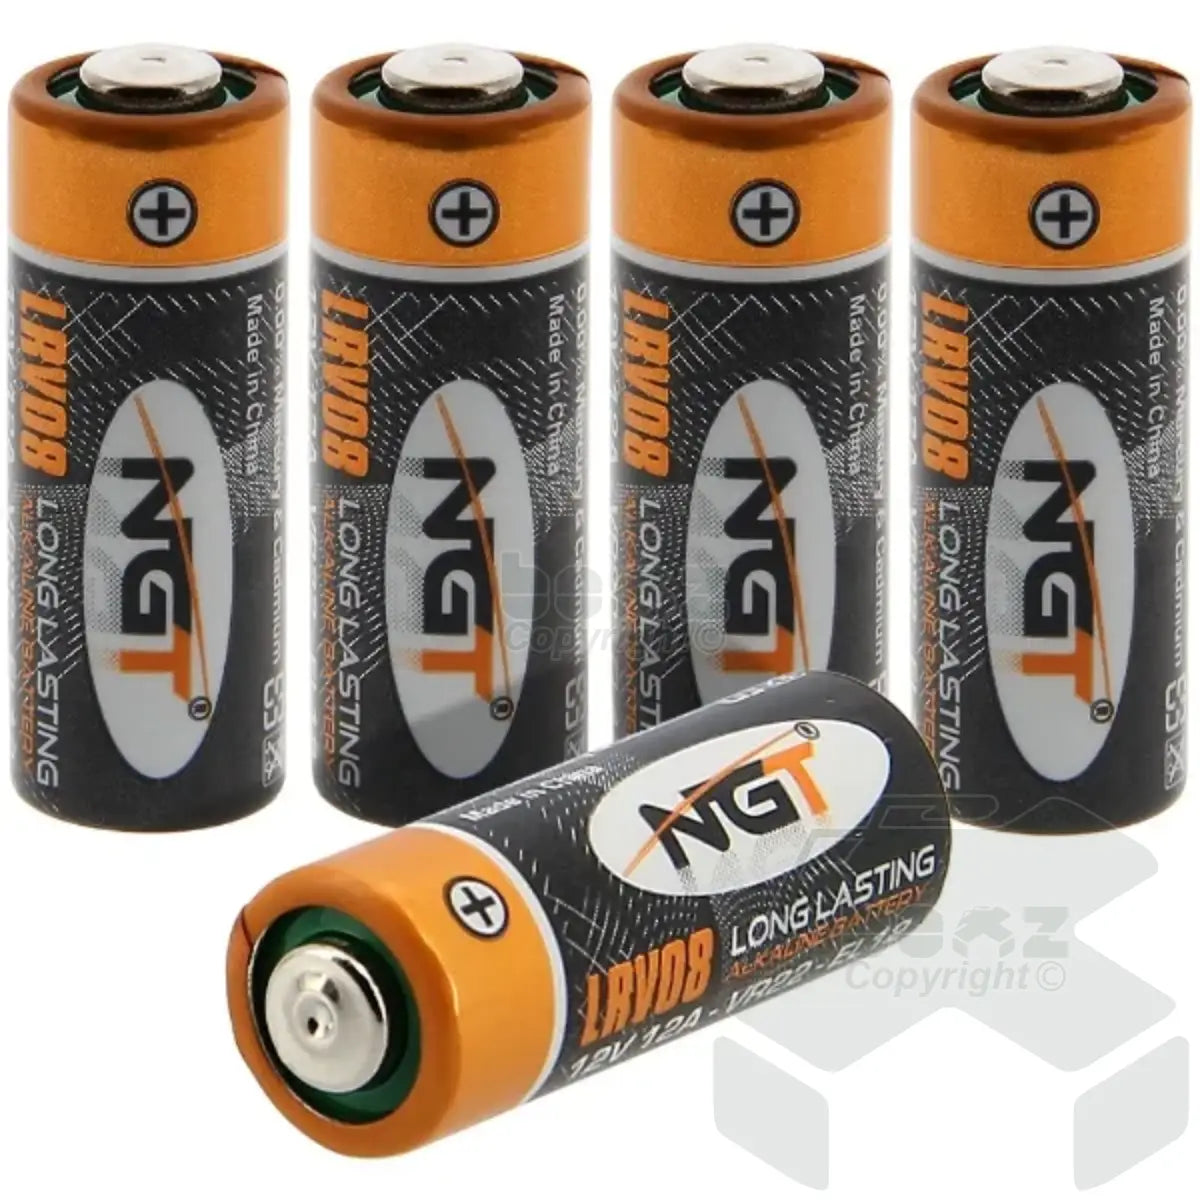 NGT LRV08 Batteries Pack of 5 12v Alkaline Batteries